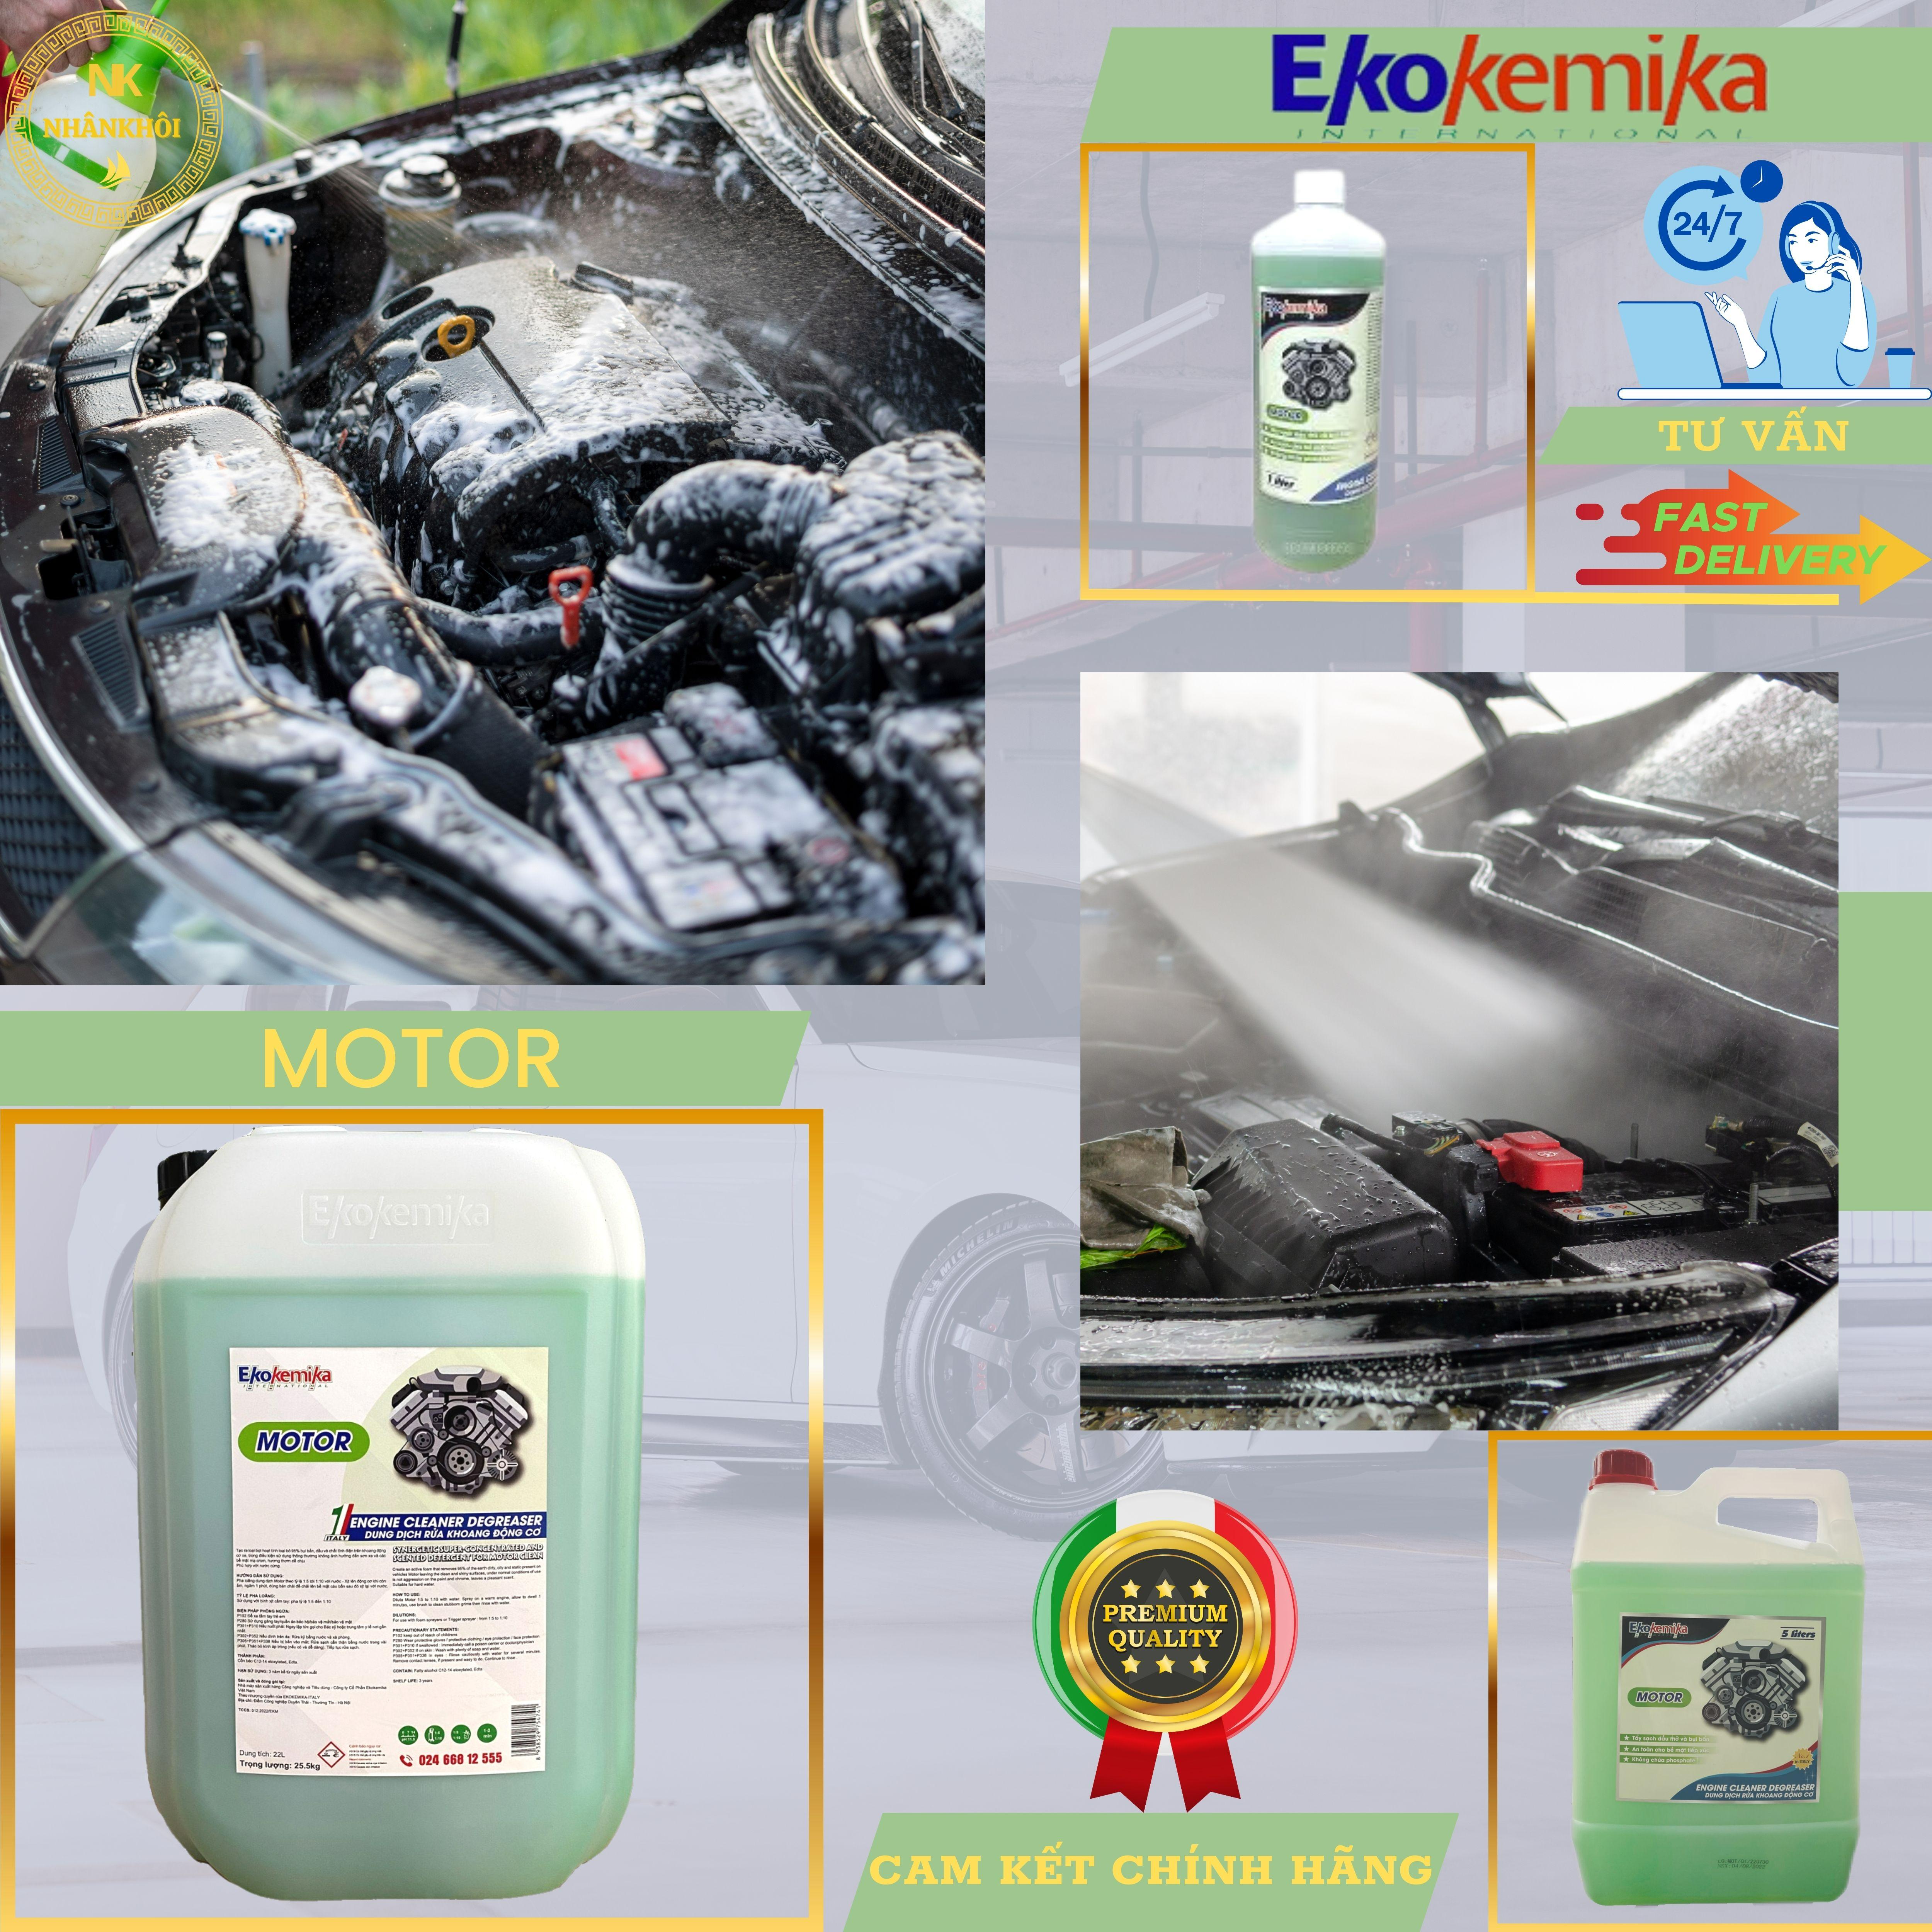 Motor - 5 lít - Dung dịch rửa khoang động cơ, khoang máy - Làm sạch dầu mỡ - Ekokemika